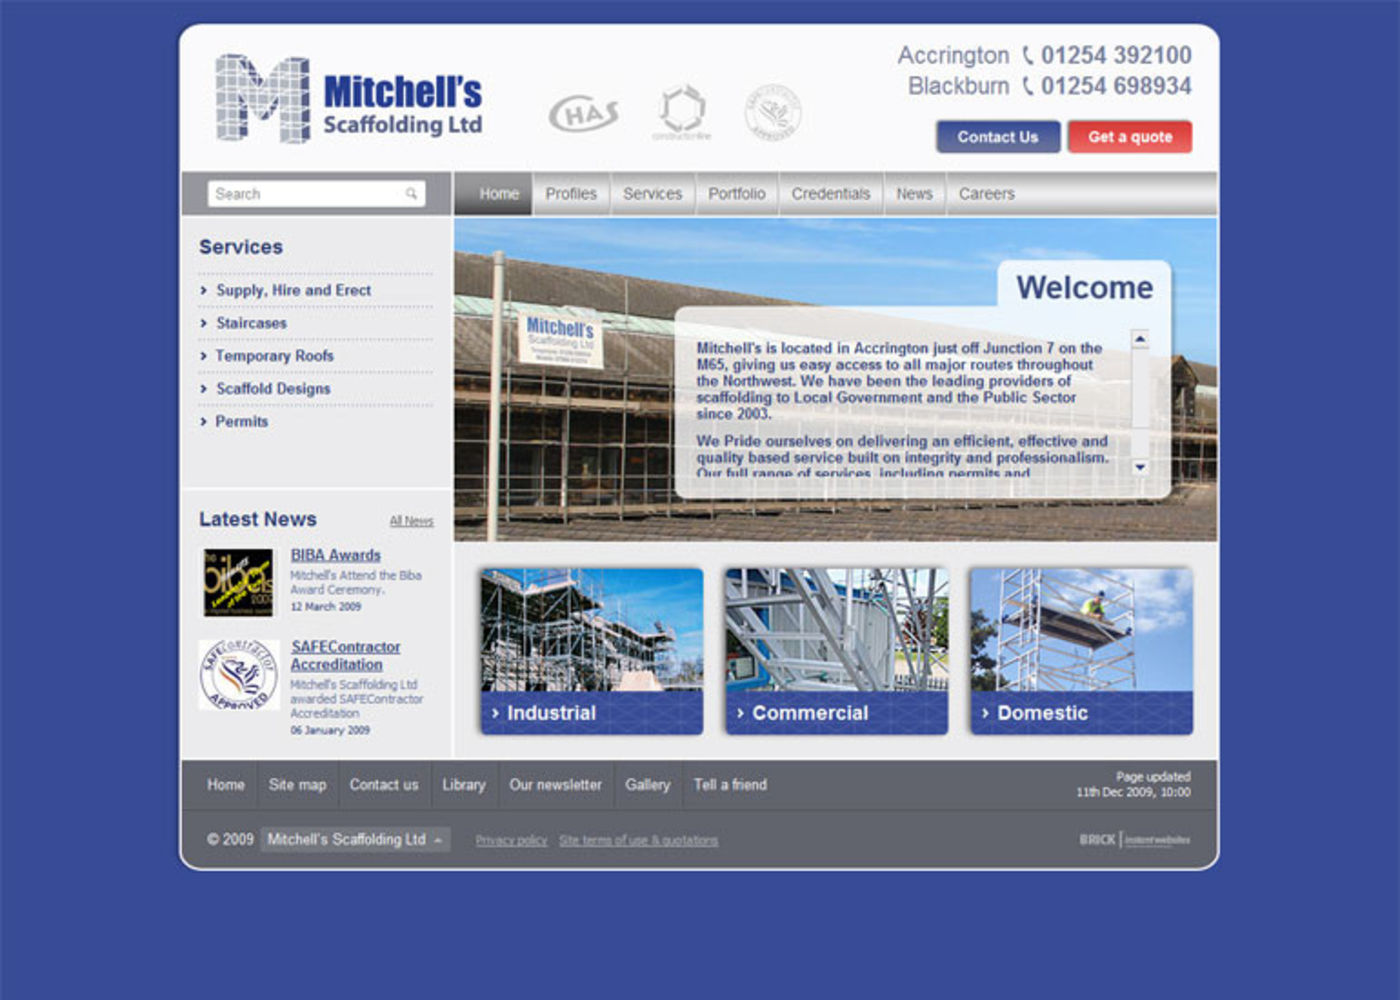 Mitchells Scaffolding Ltd Home